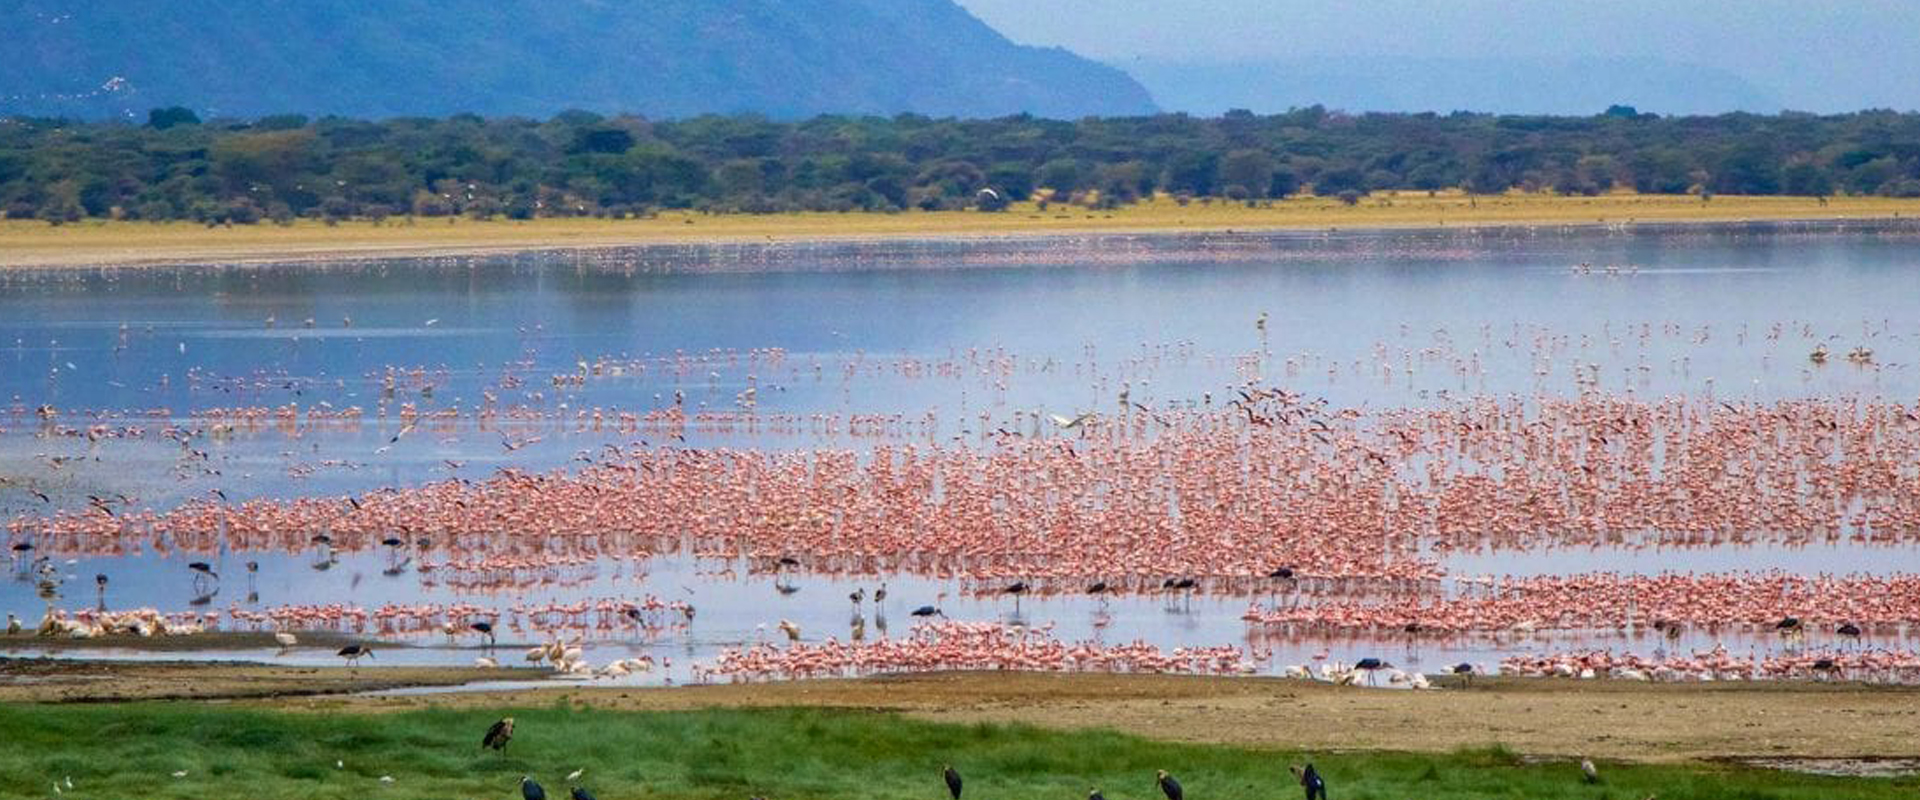 Detailed 4 days Tanzania safari to Serengeti, Lake Manyara & Ngorongoro crater